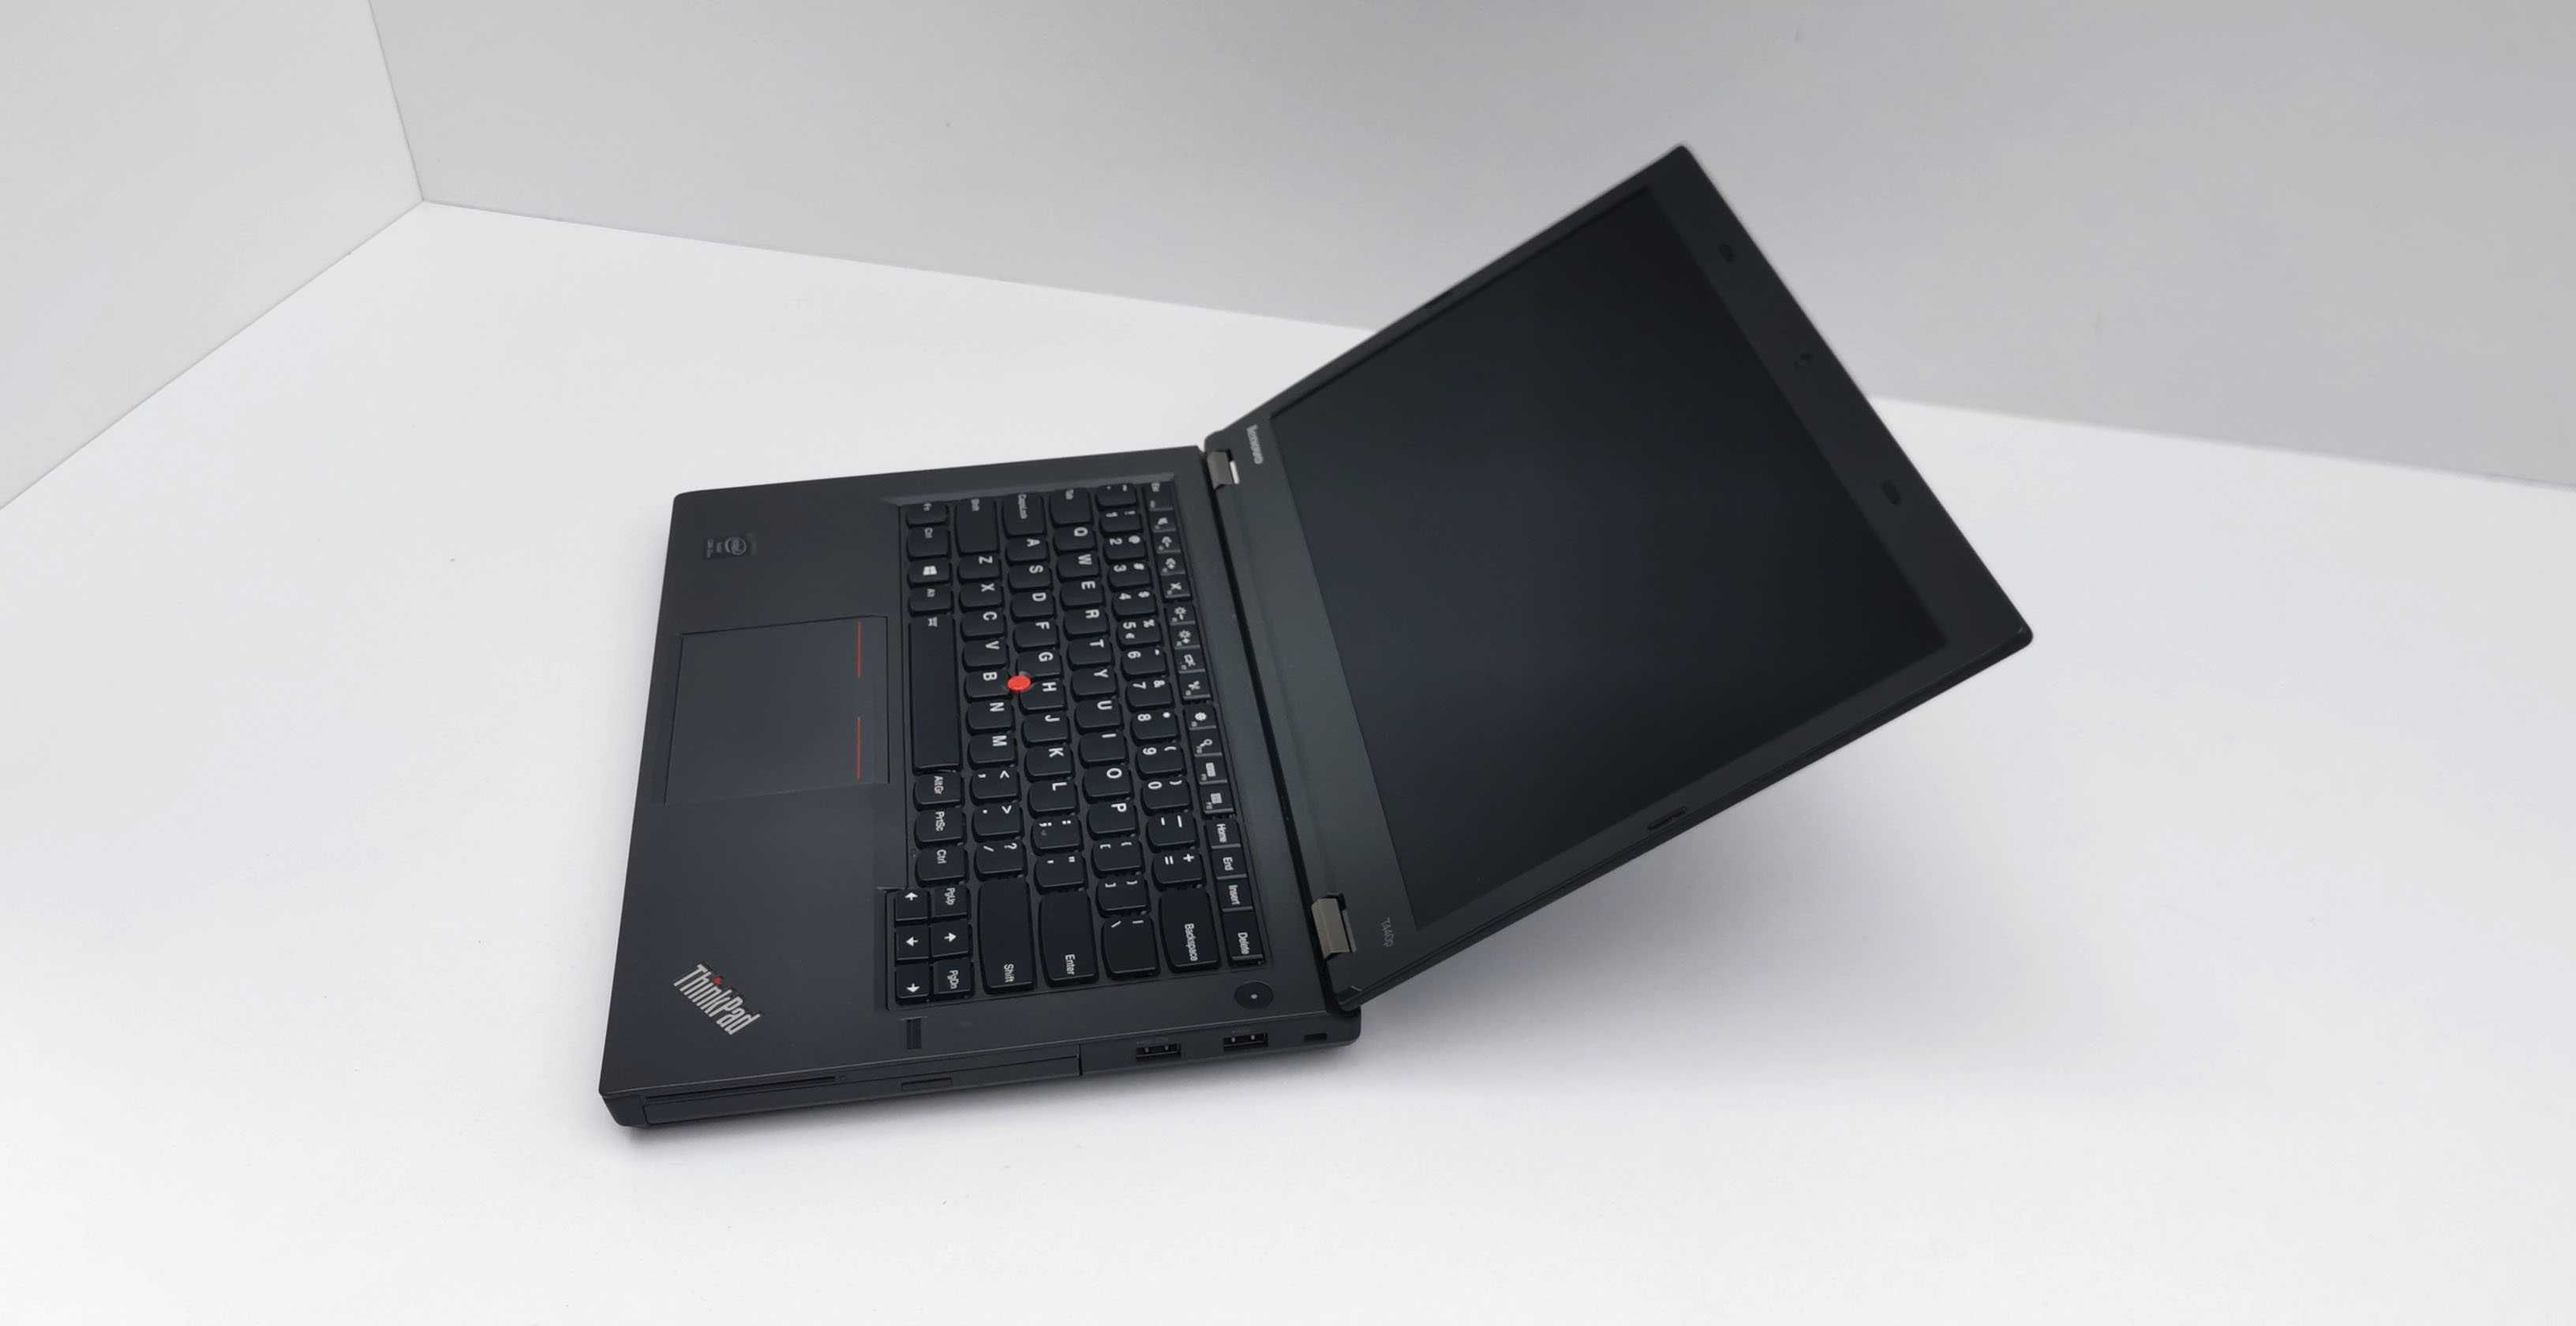 Lenovo ThinkPad T440p i7-4600M configurabil la cerere